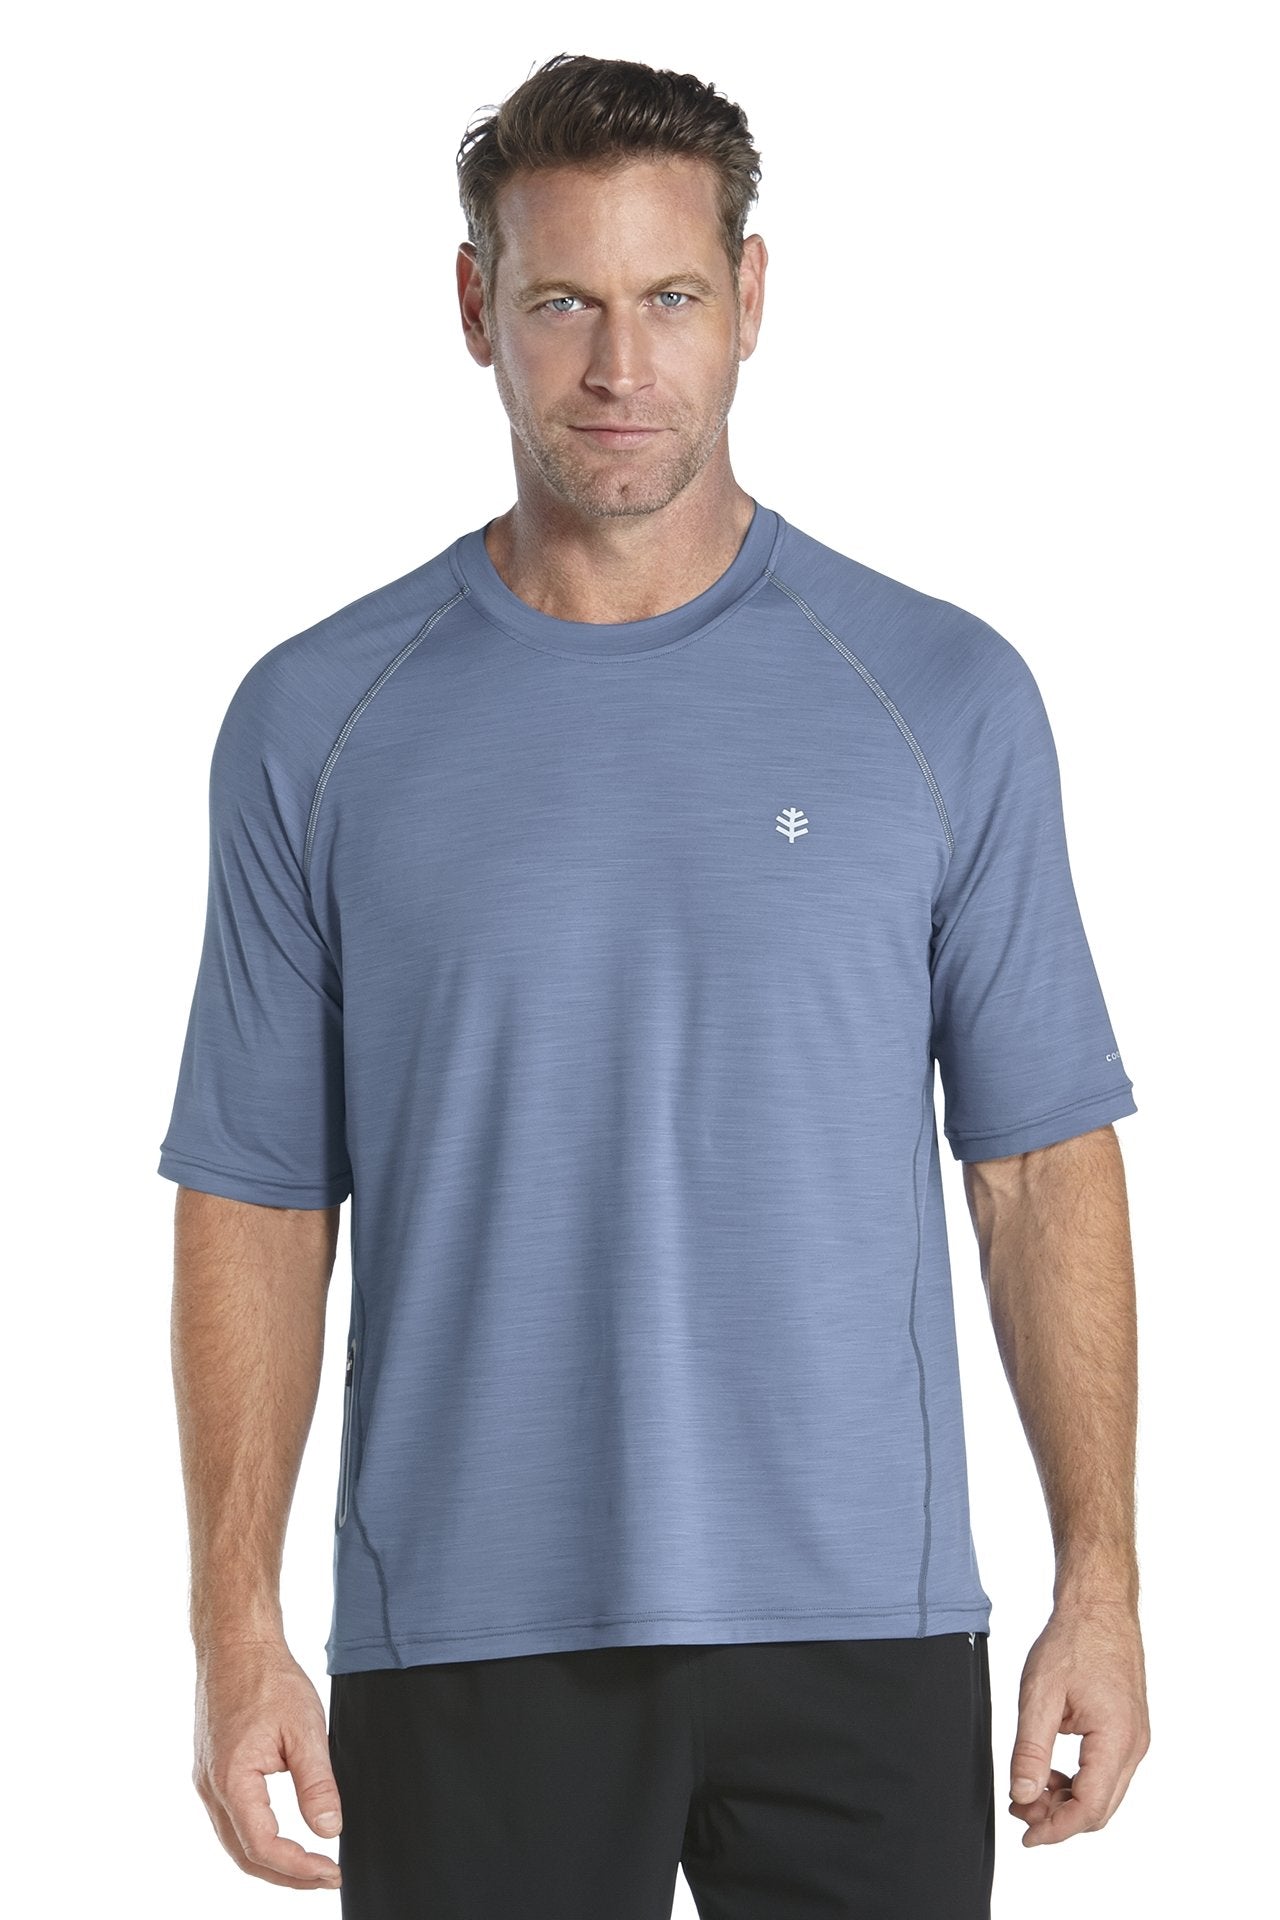 Coolibar - UV-beschermend shirt heren - blauw